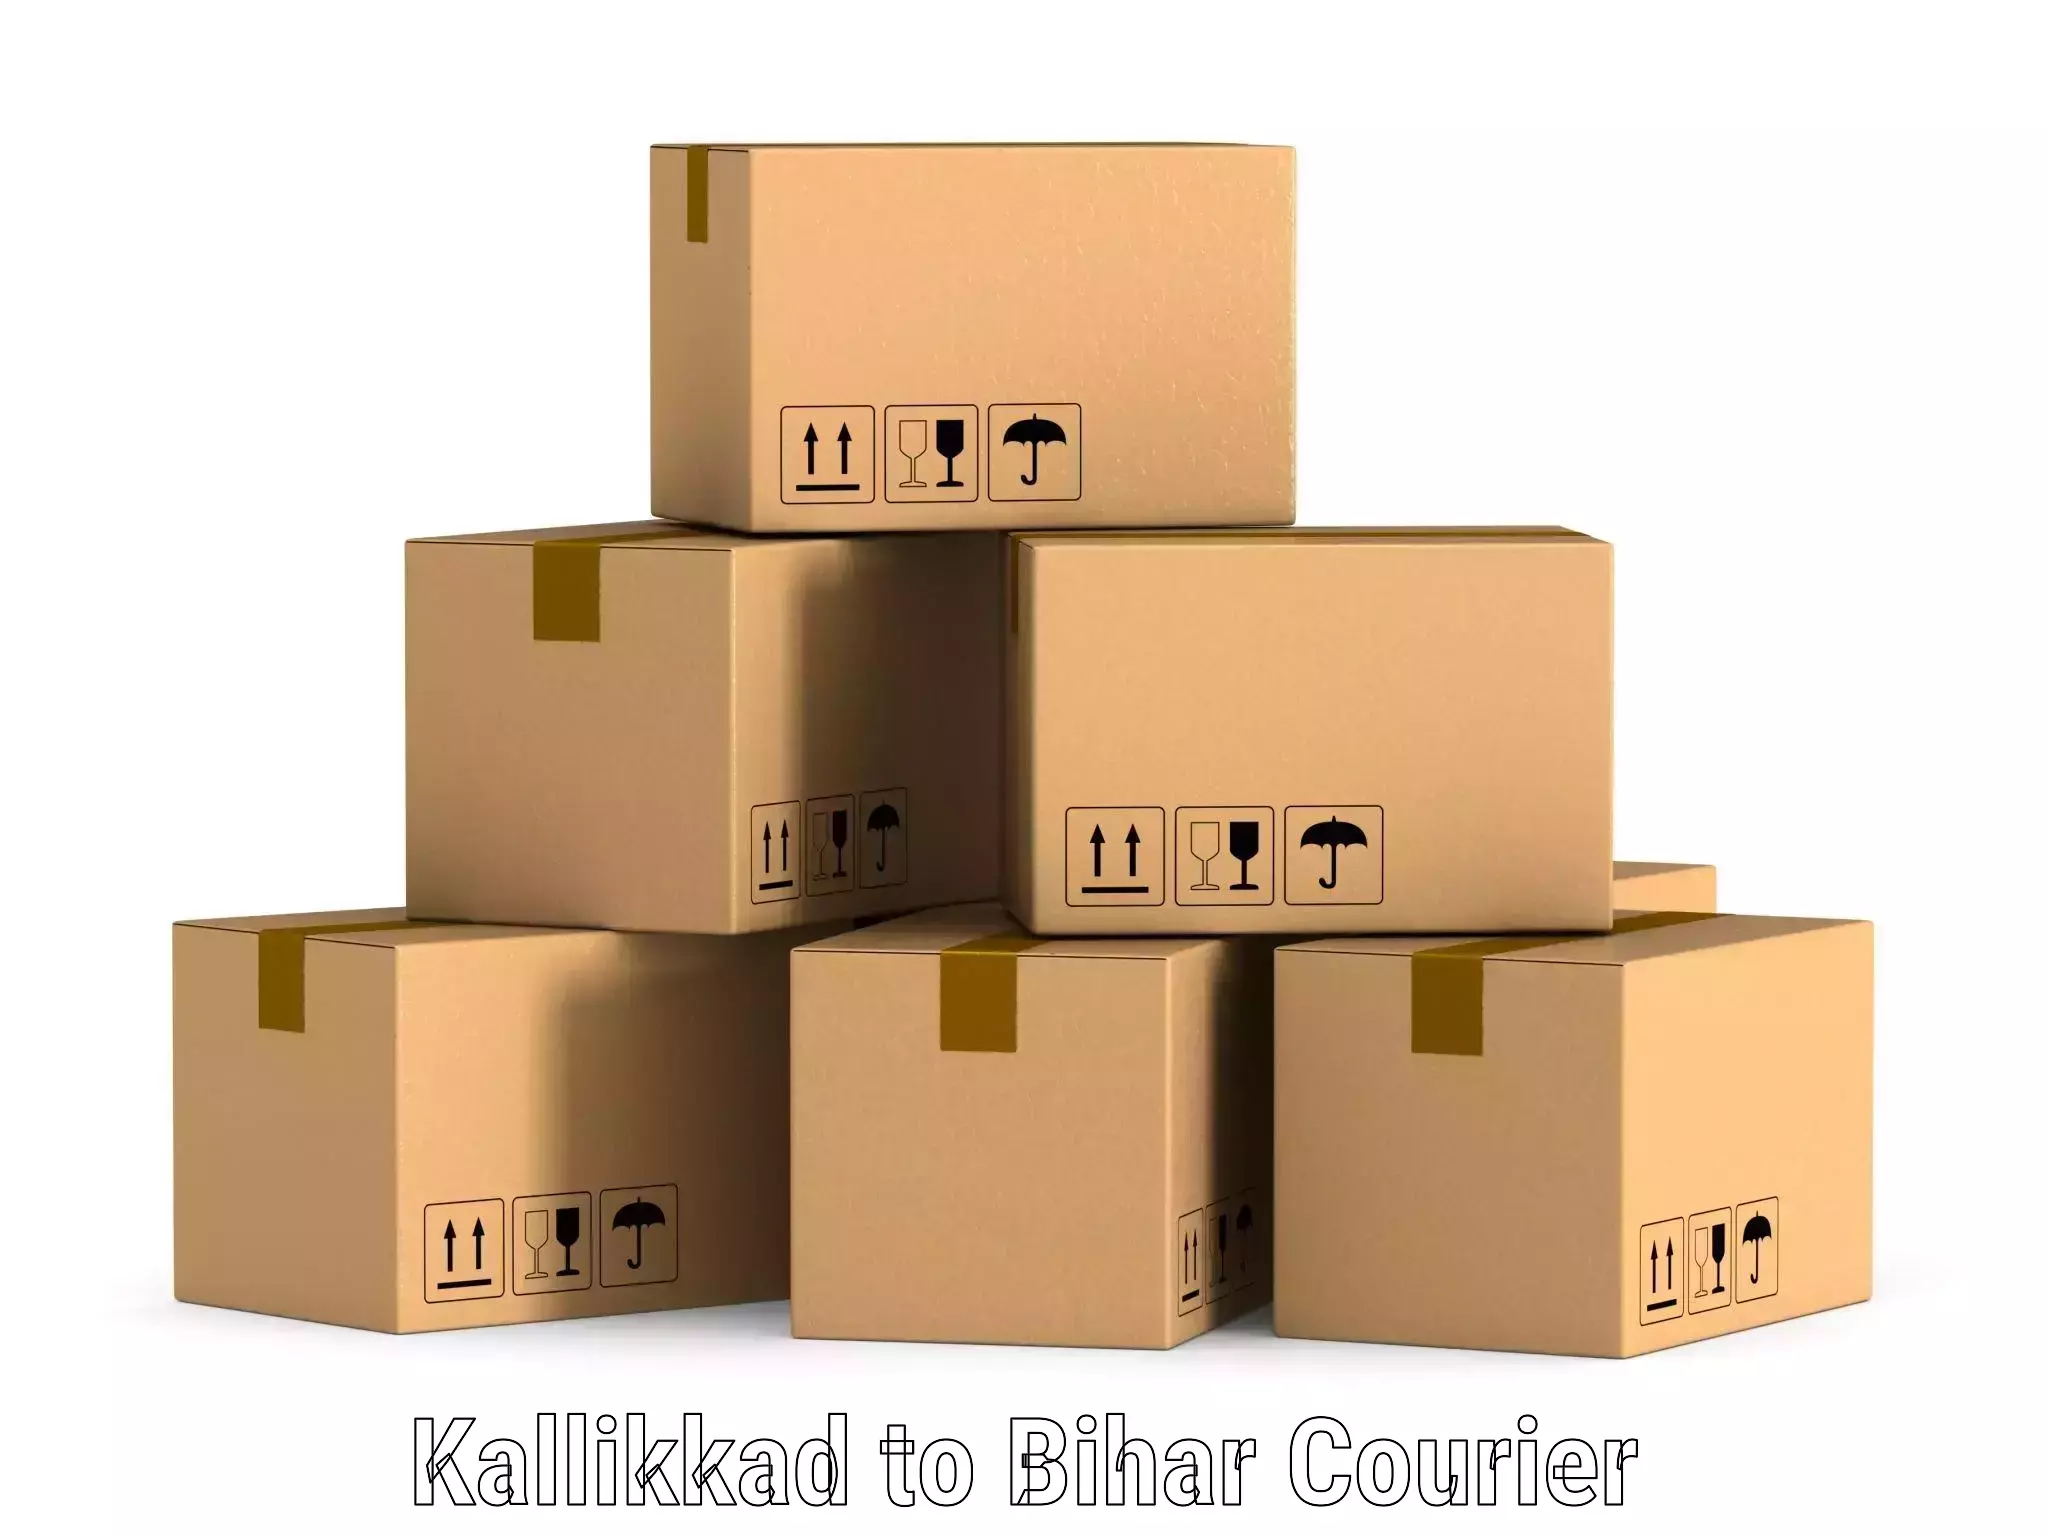 Cost-effective courier options Kallikkad to Kishanganj